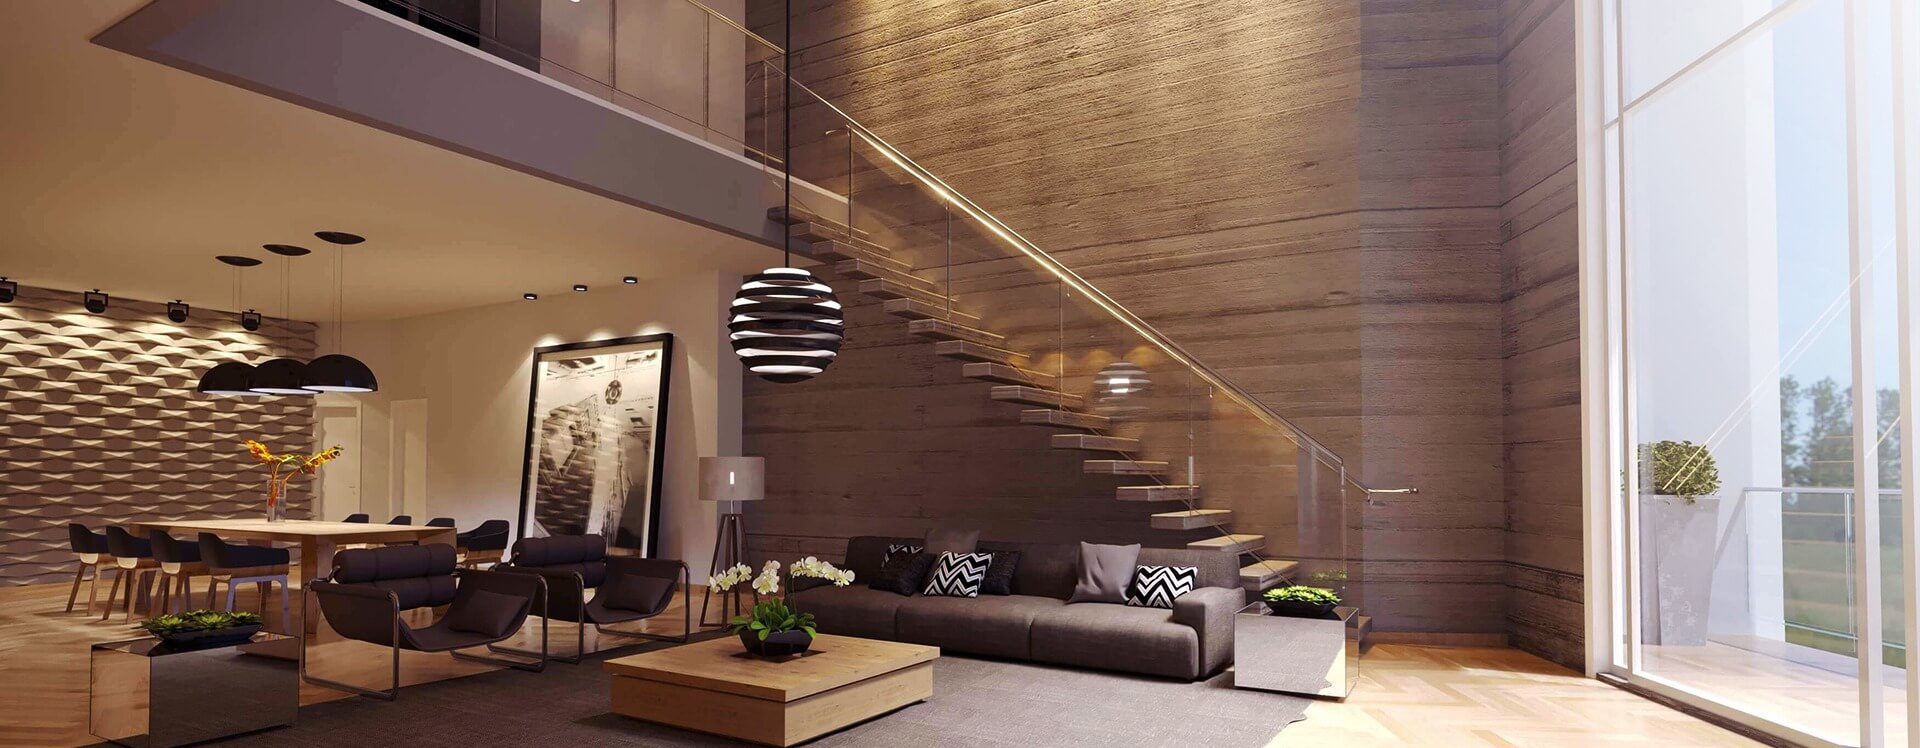 pé direito duplo, escada concreto - interior - projeto casa moderna